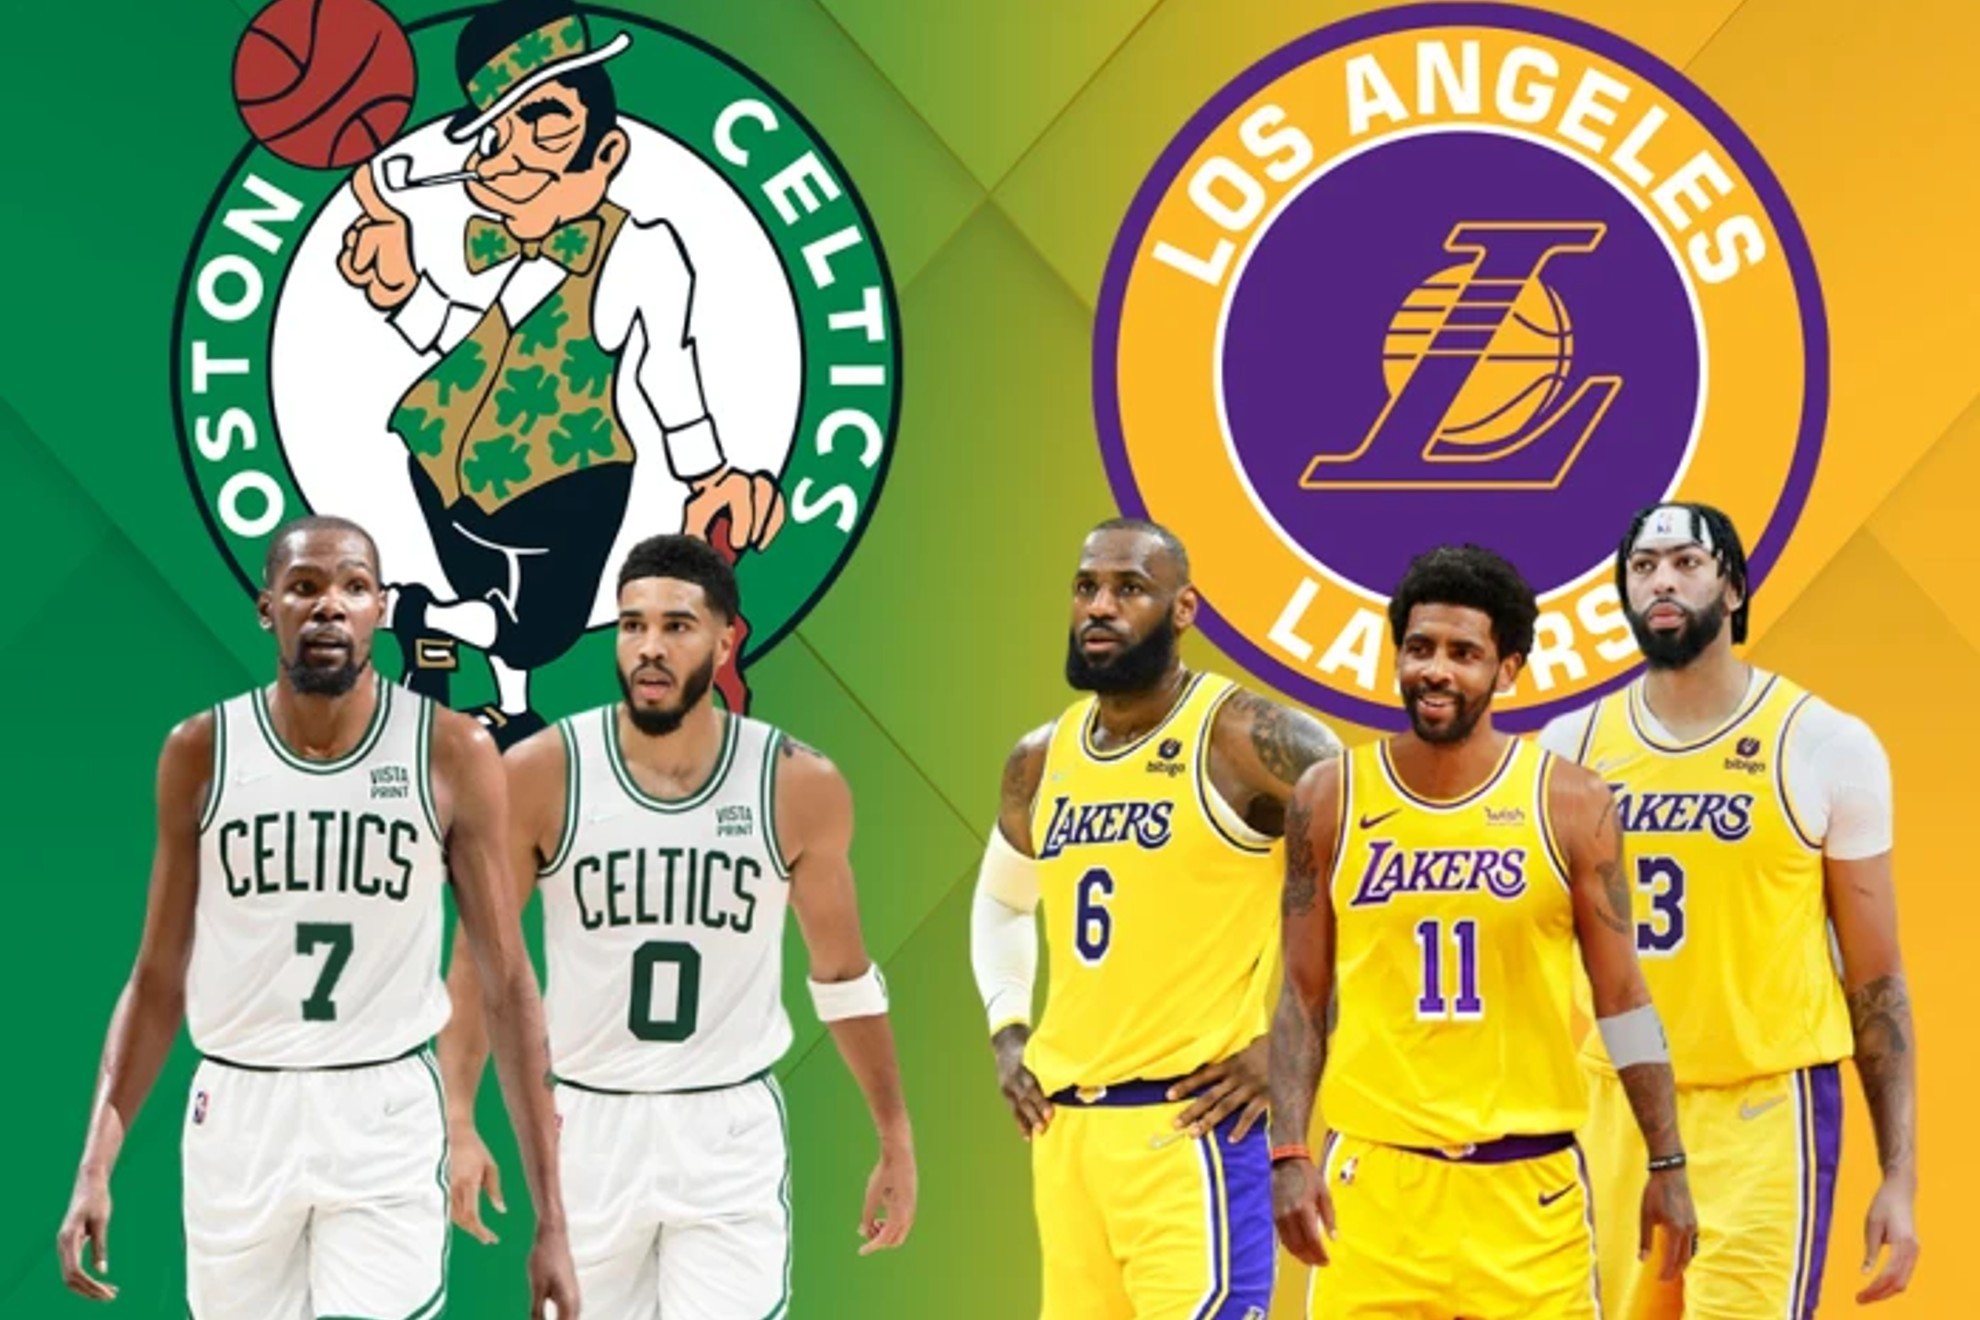 Durant a los Celtics e Irving a los Lakers: El megatraspaso que puede cambiar la NBA